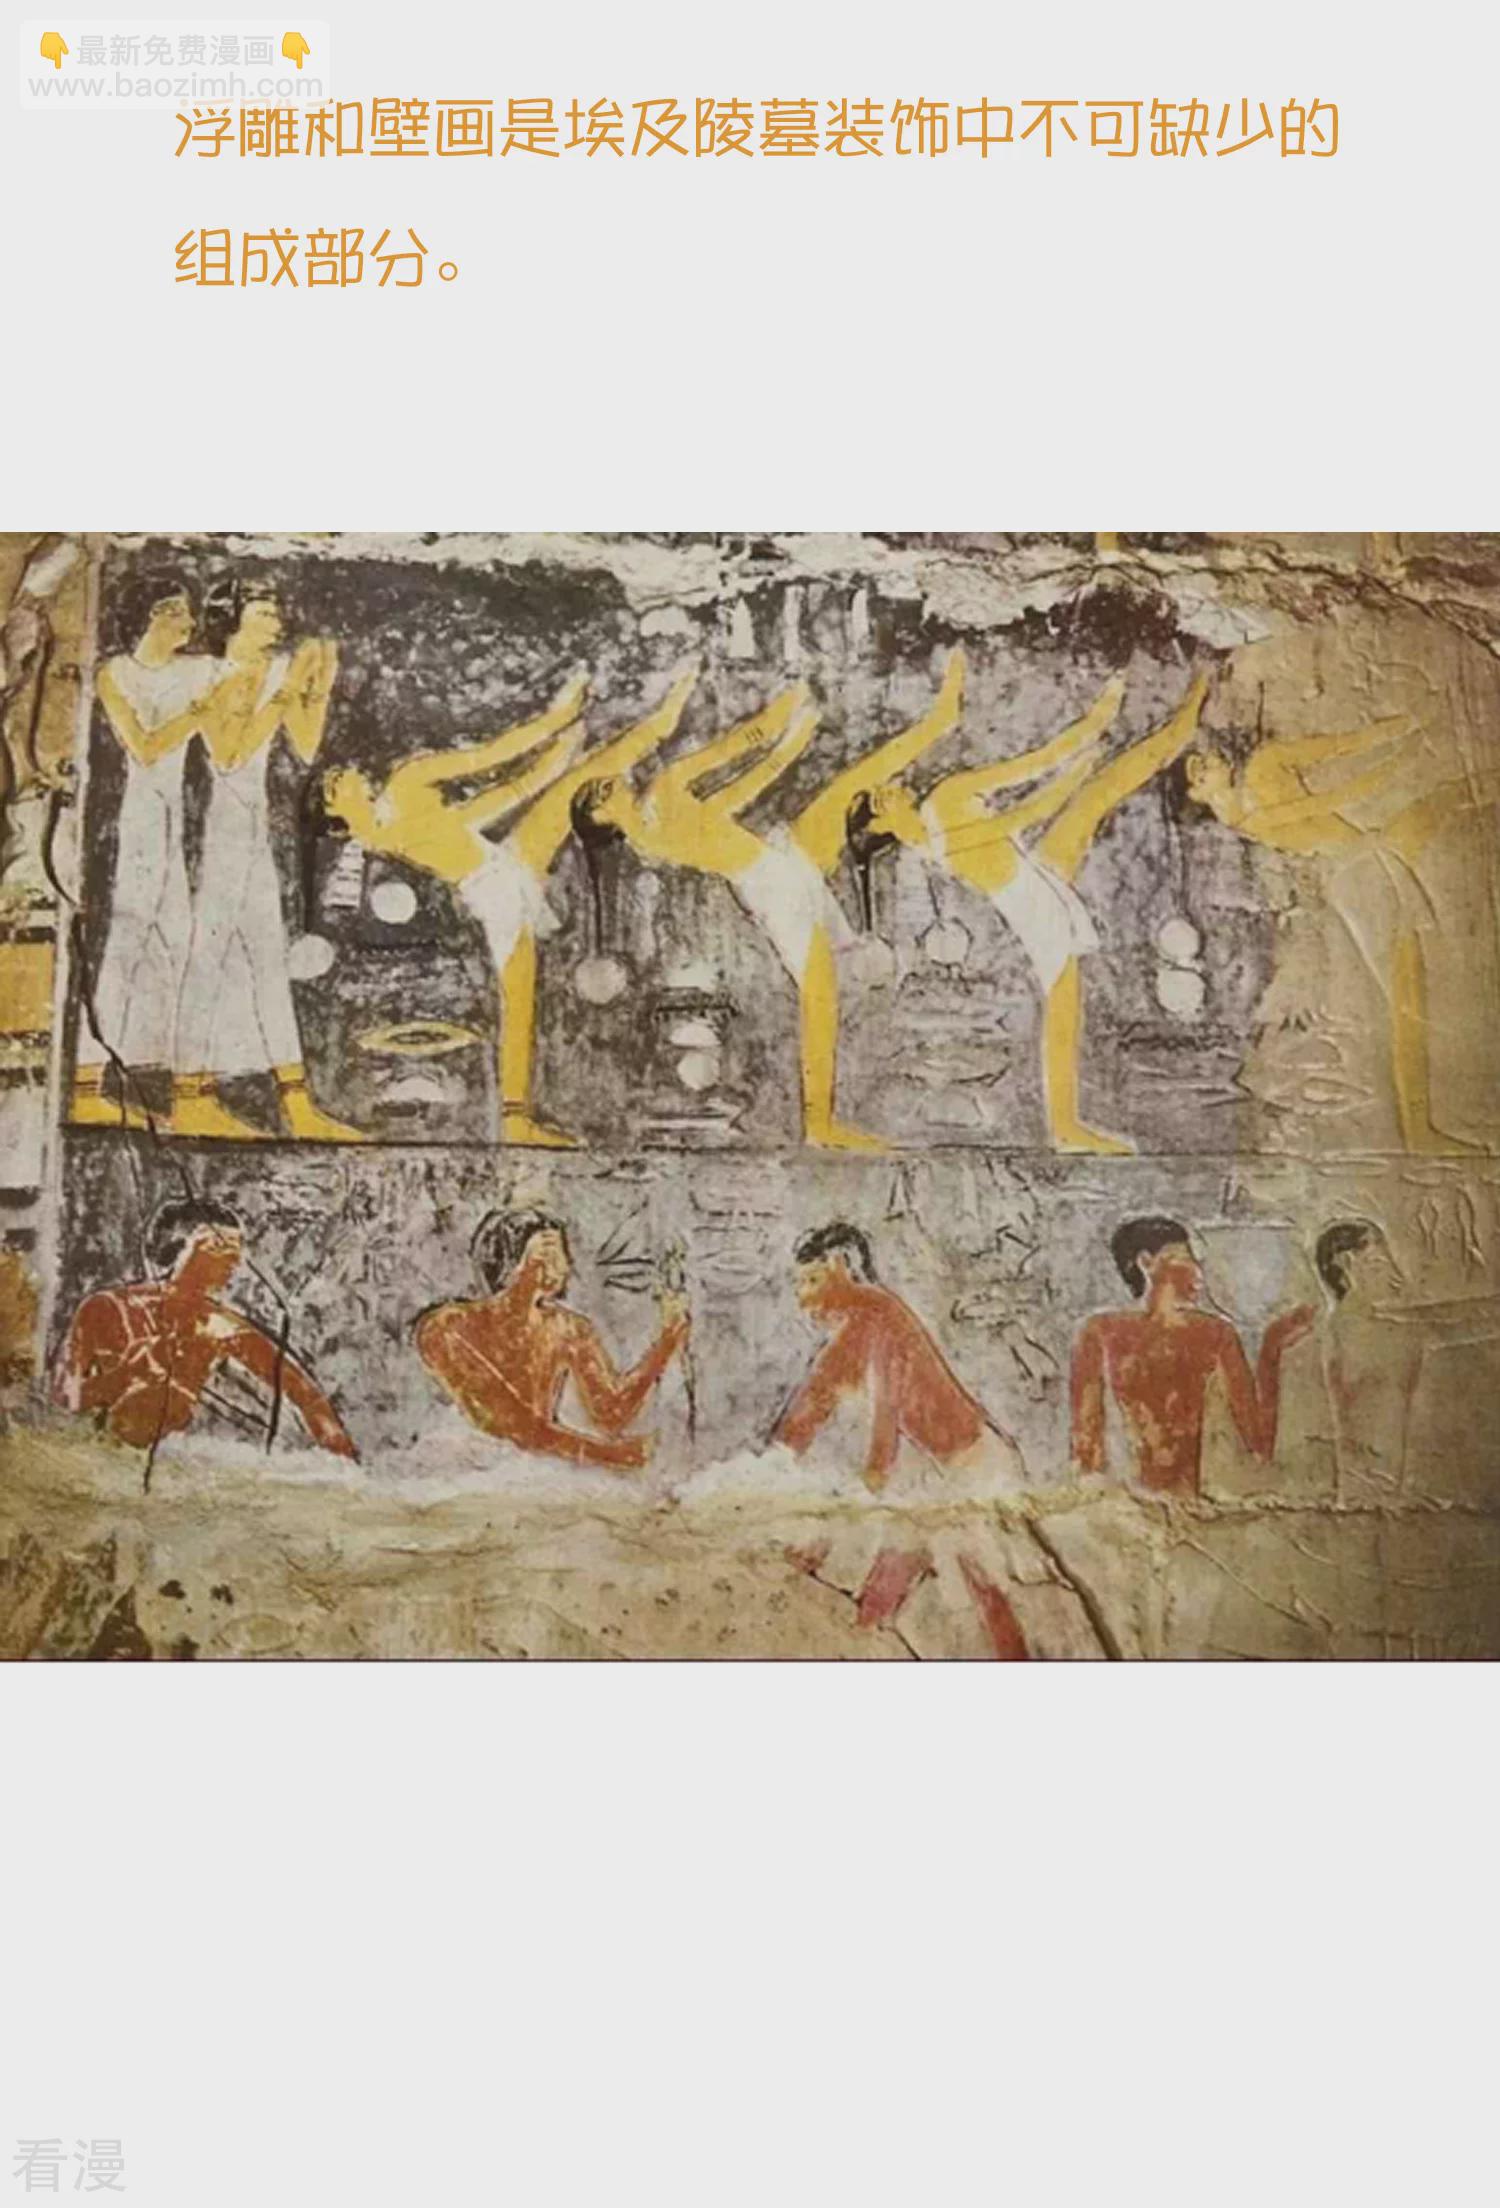 王的第一寵後 - 王的茶話會37 古埃及的壁畫文化 - 1